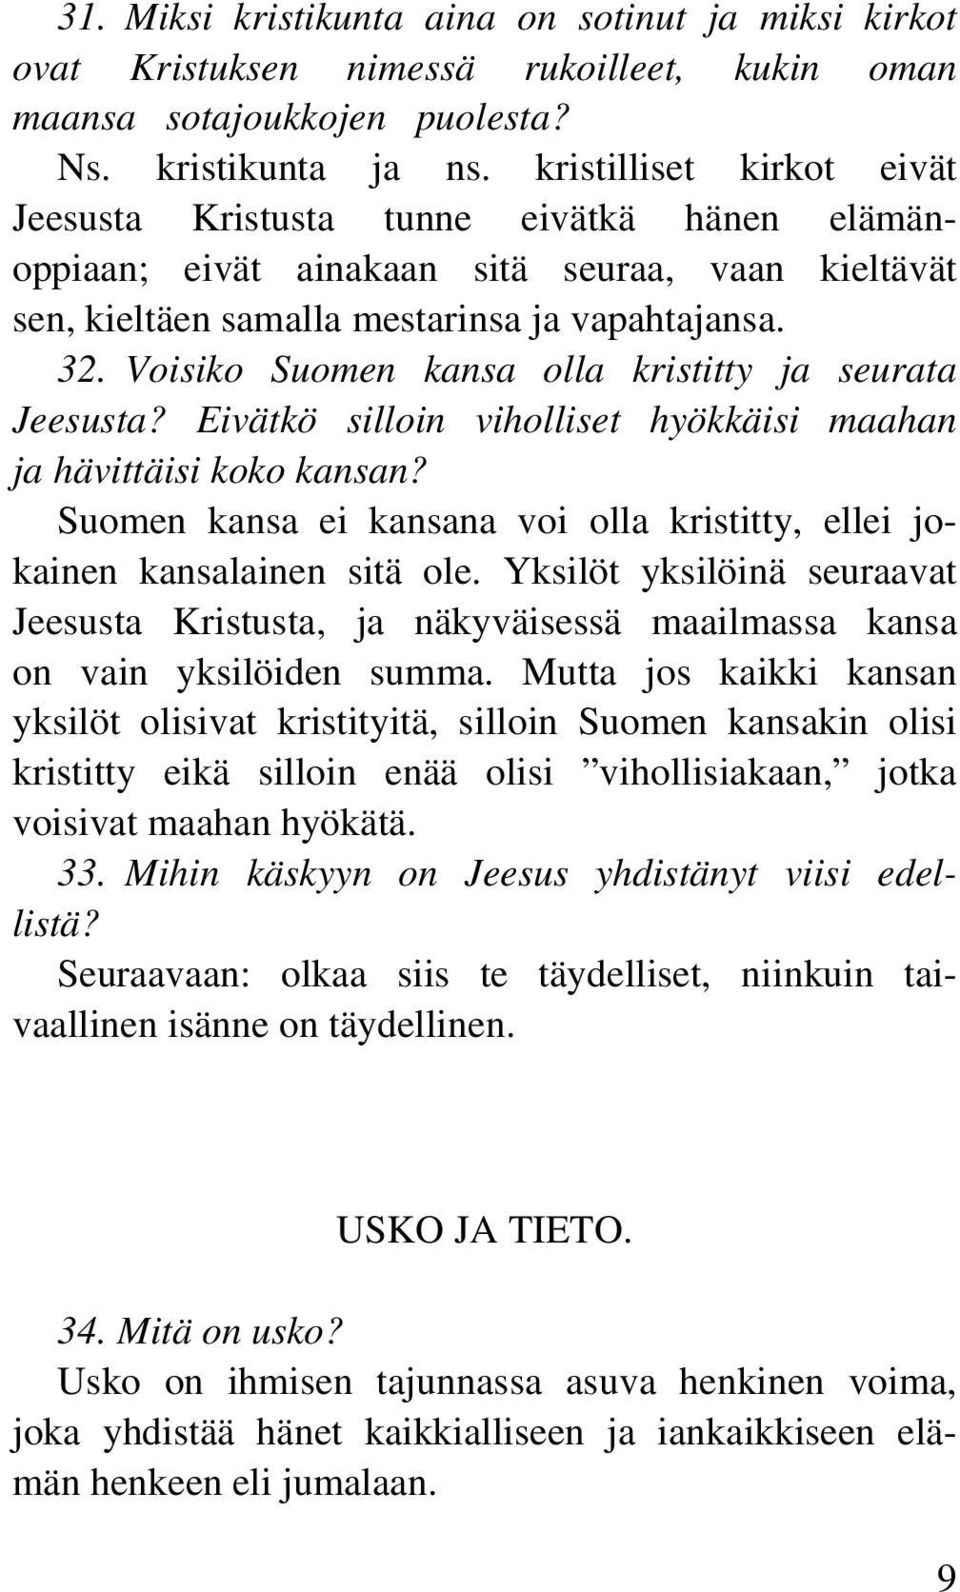 Voisiko Suomen kansa olla kristitty ja seurata Jeesusta? Eivätkö silloin viholliset hyökkäisi maahan ja hävittäisi koko kansan?